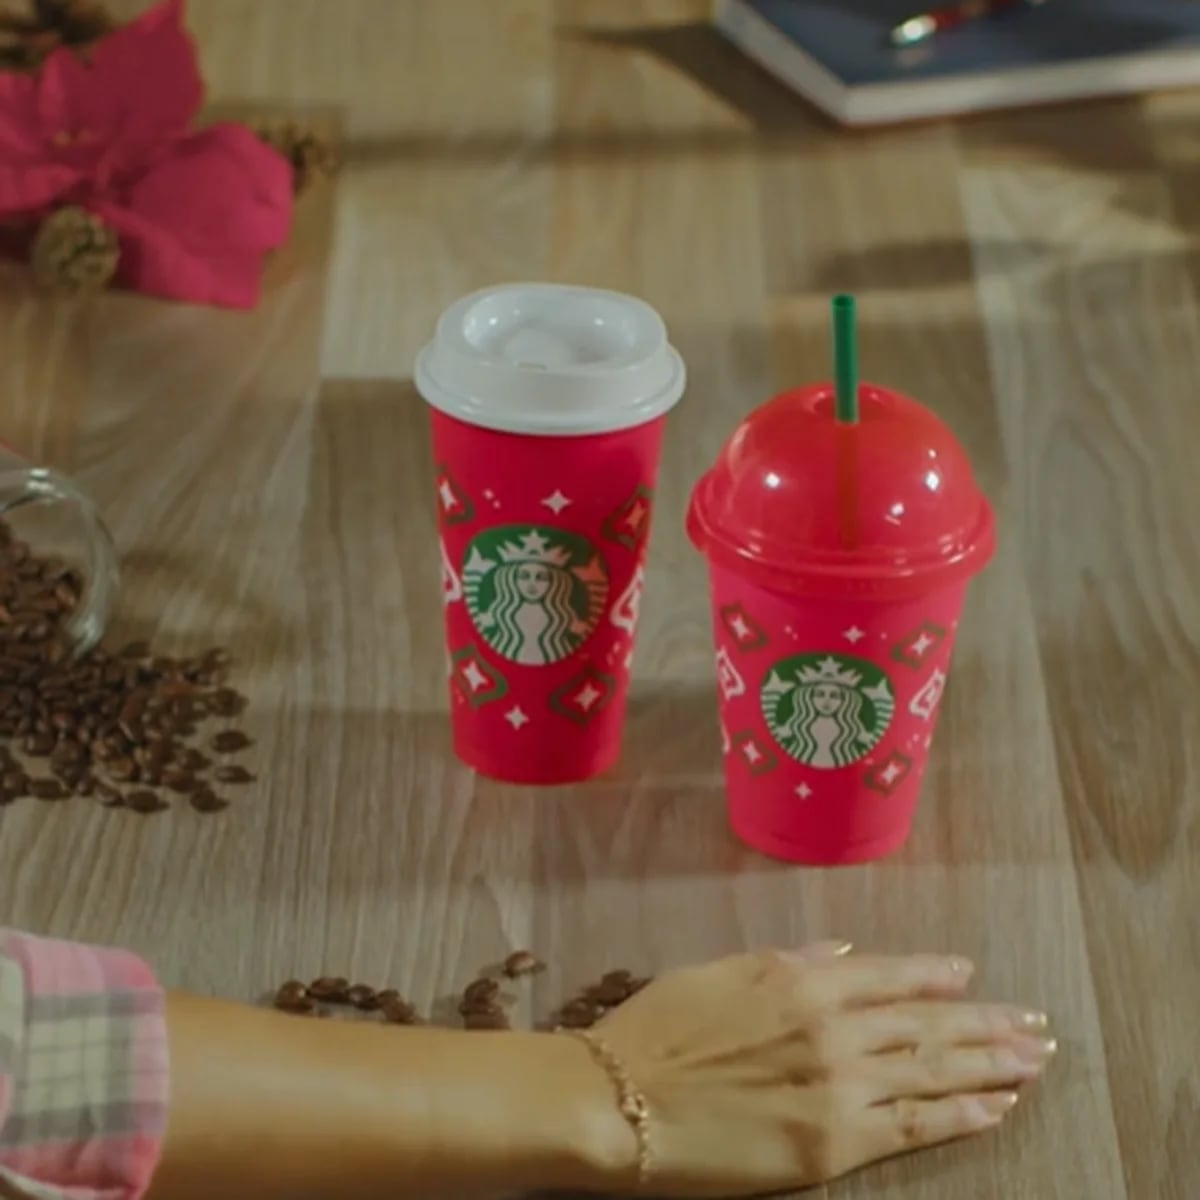 Así se ven los vasos navideños de Starbucks de este año